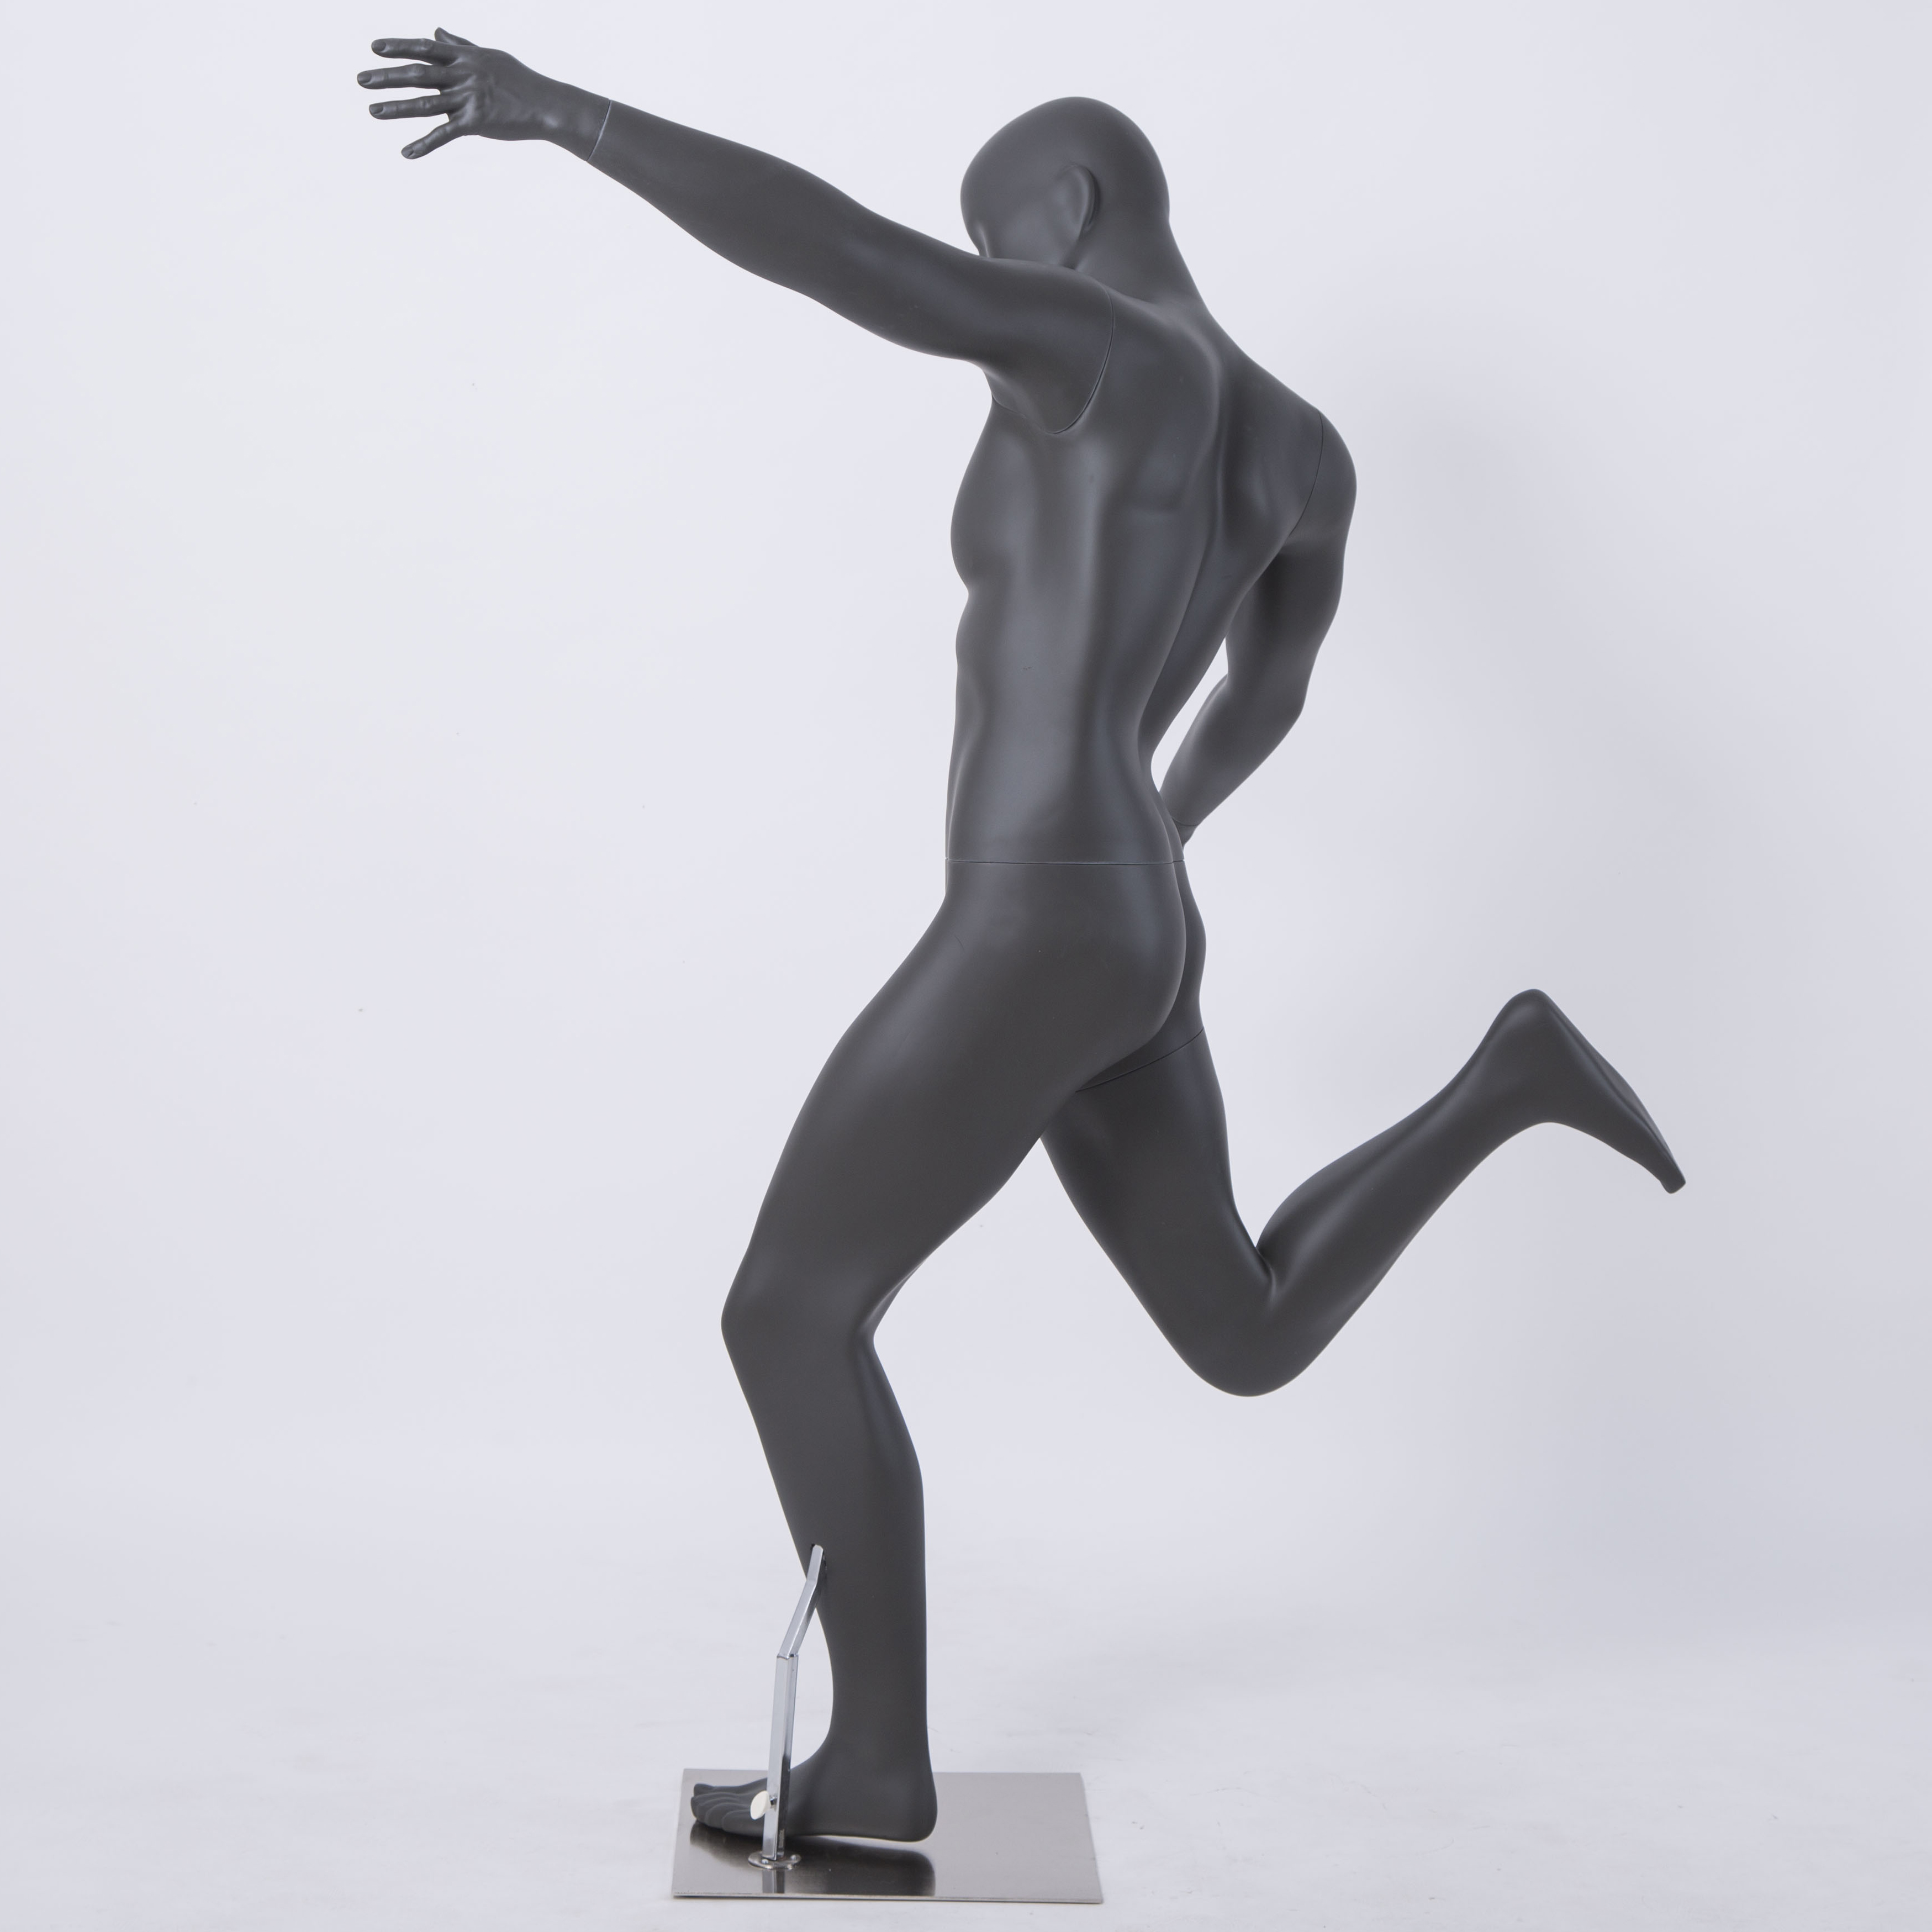 Mannequin football mannequin, man, dark grey